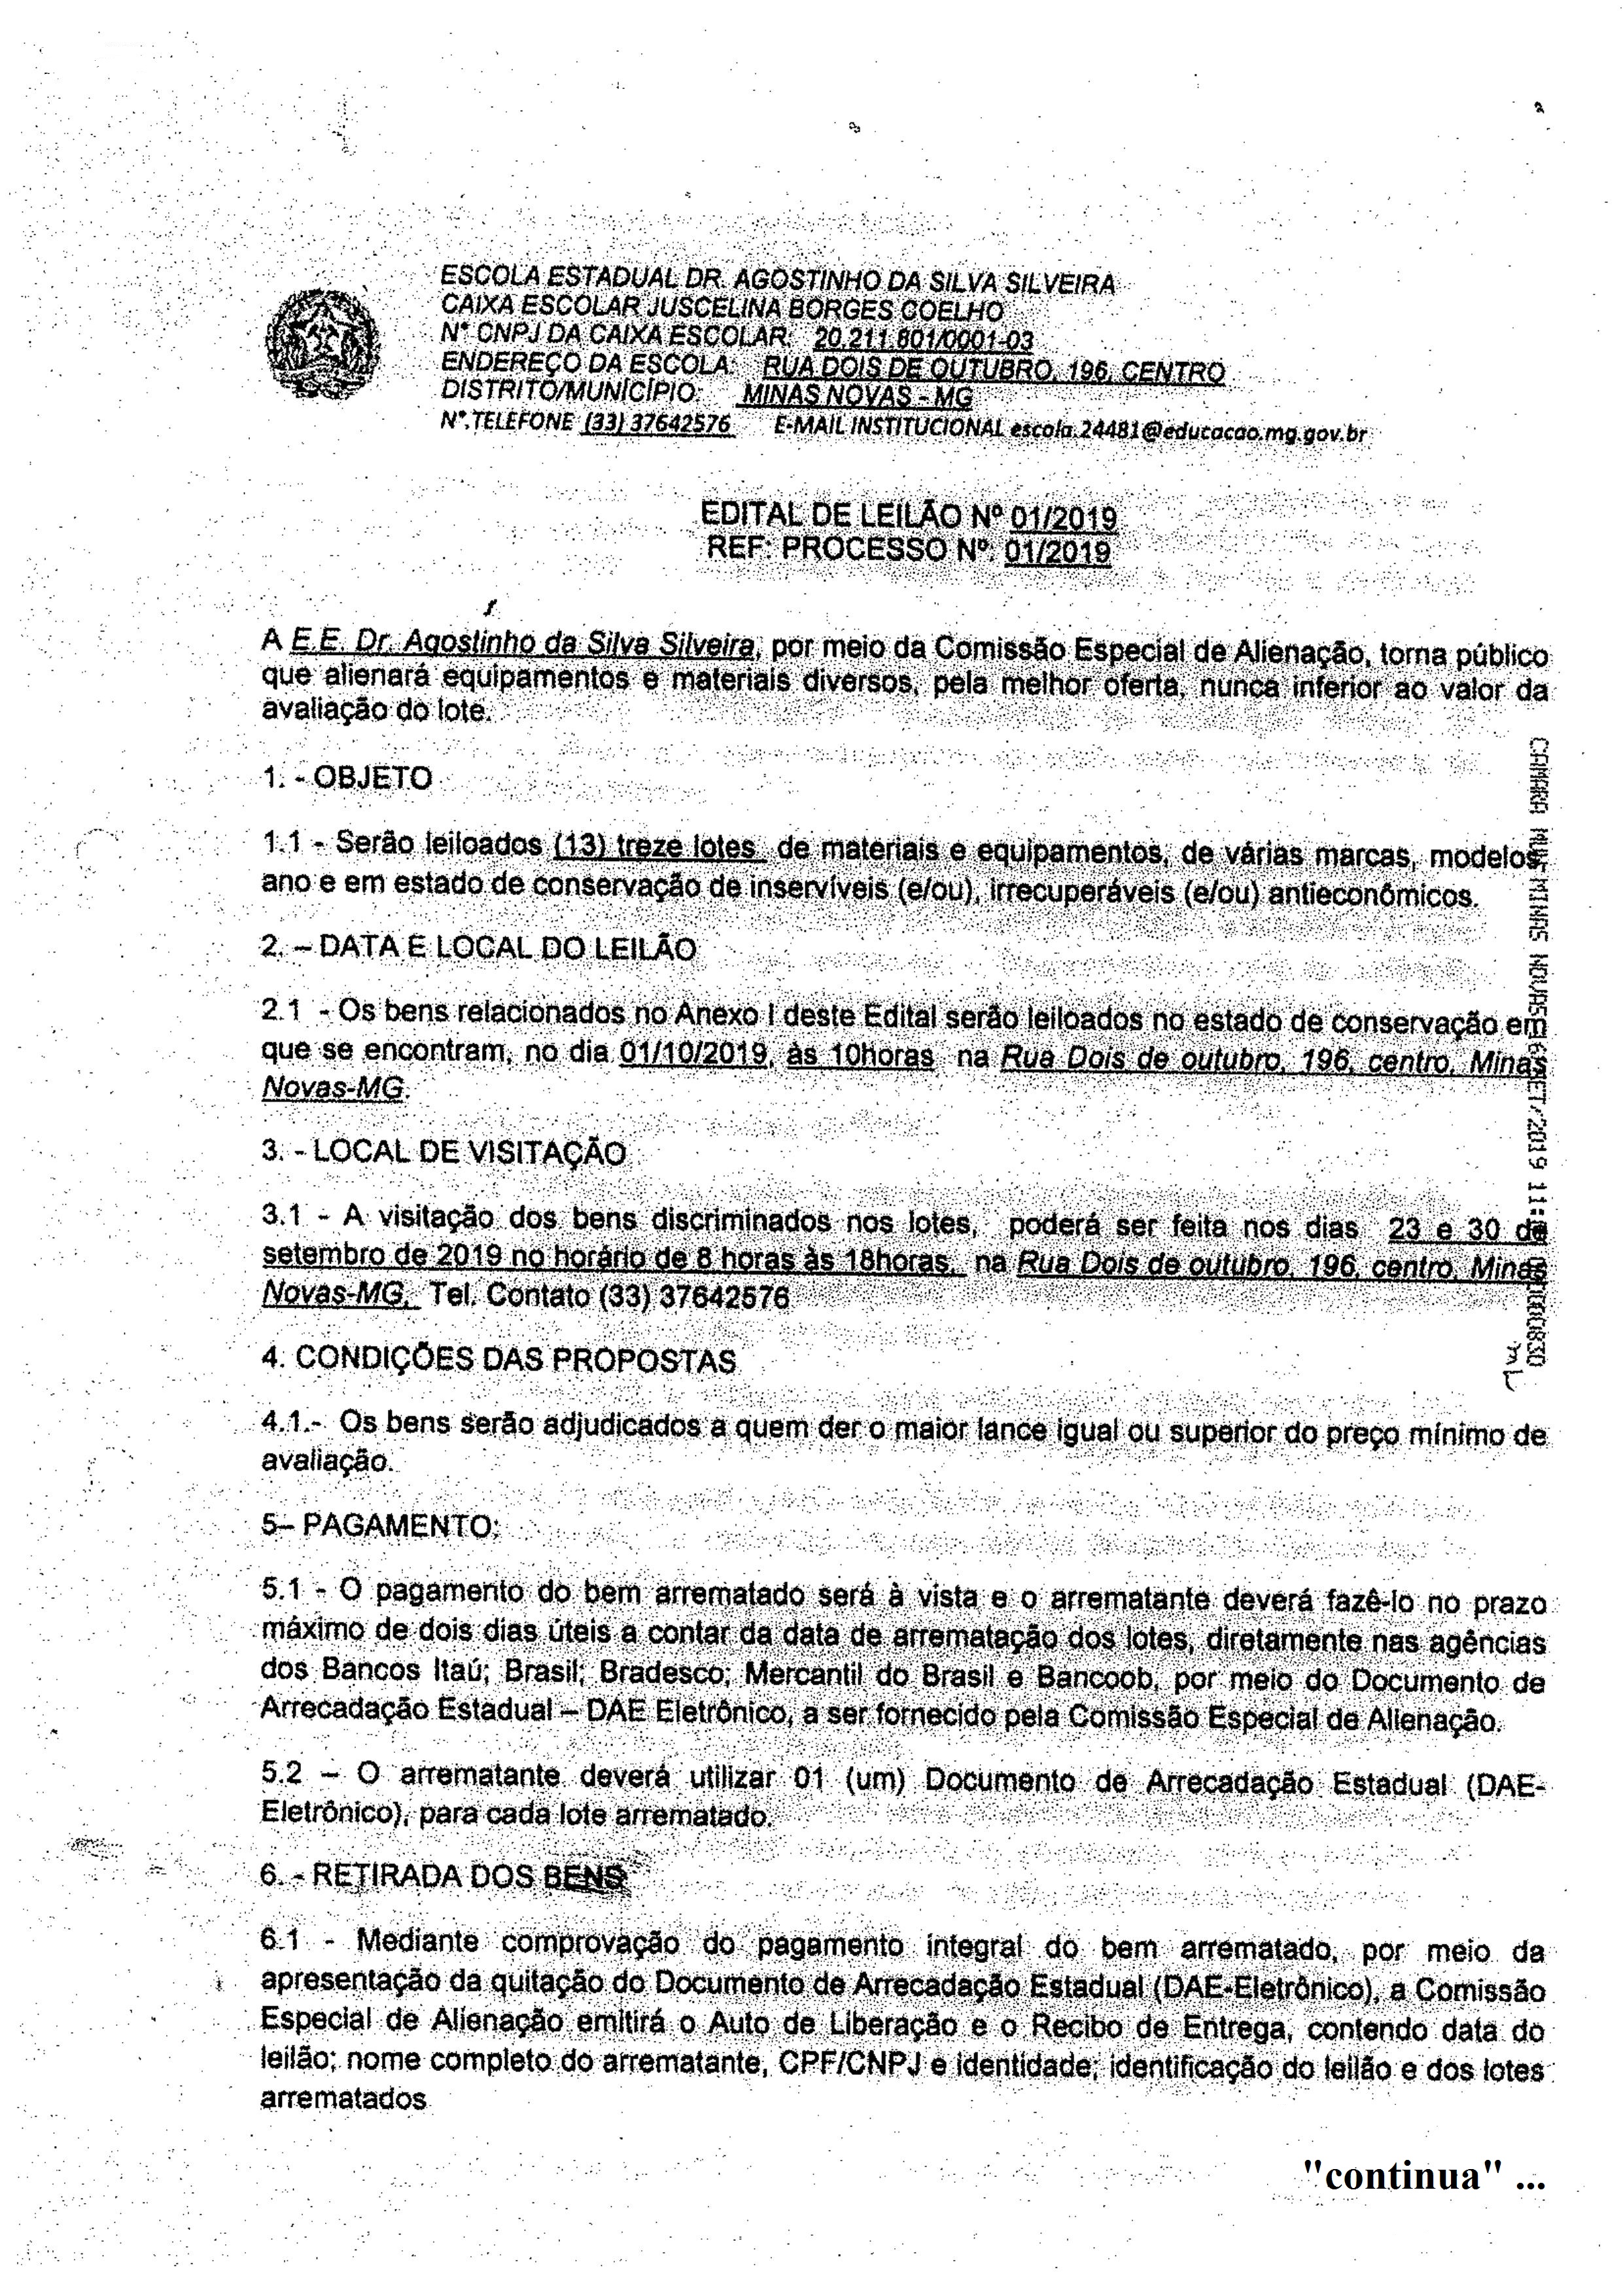 Edital de Leilão nº 01/2019 - Ref. Processo nº 01/2019 (Escola Estadual "Dr. Agostinho da Silva Silveira")